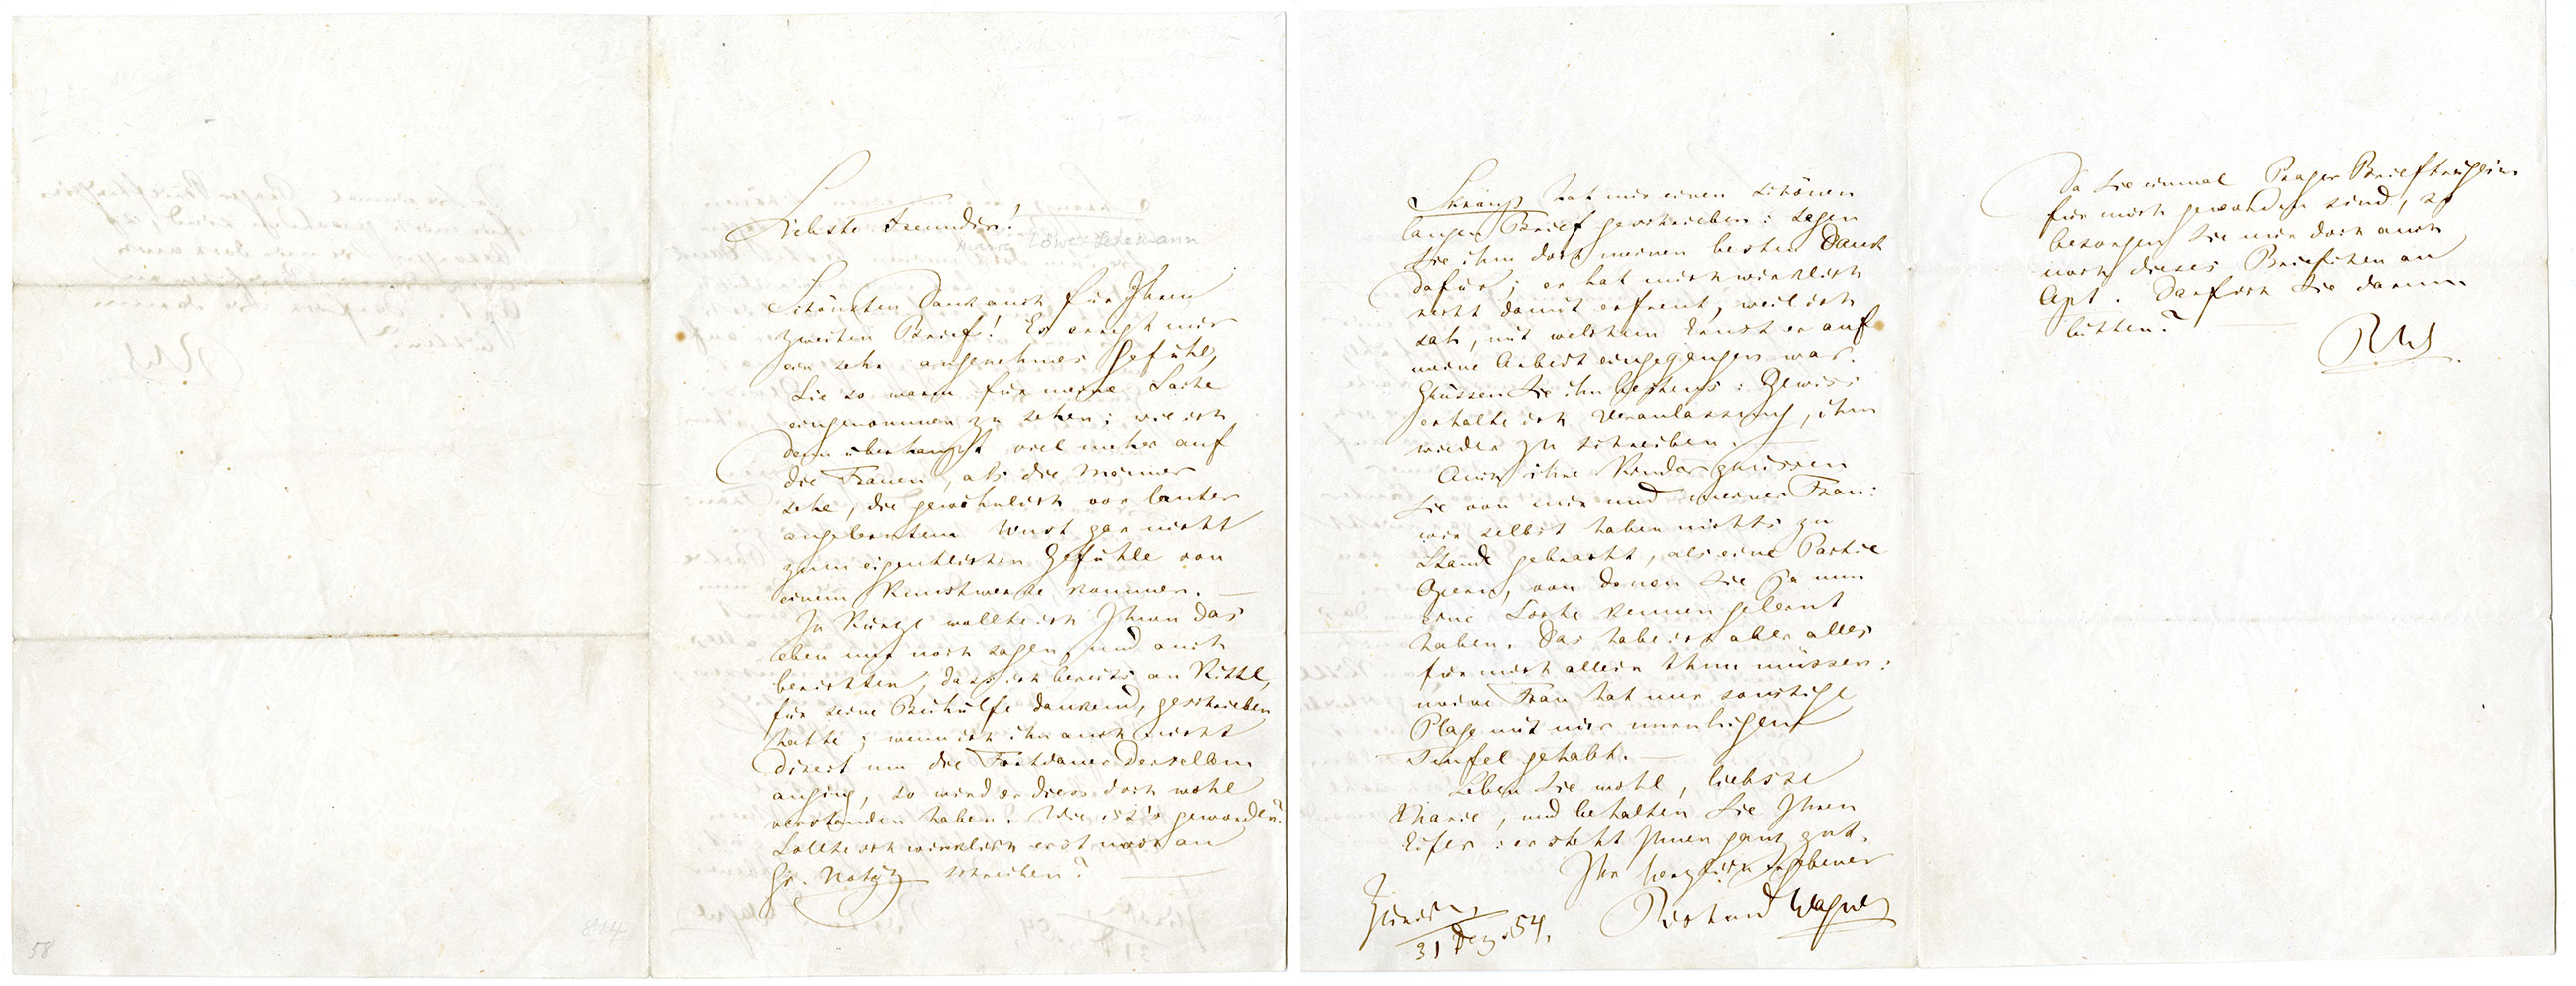 Richard Wagner letter